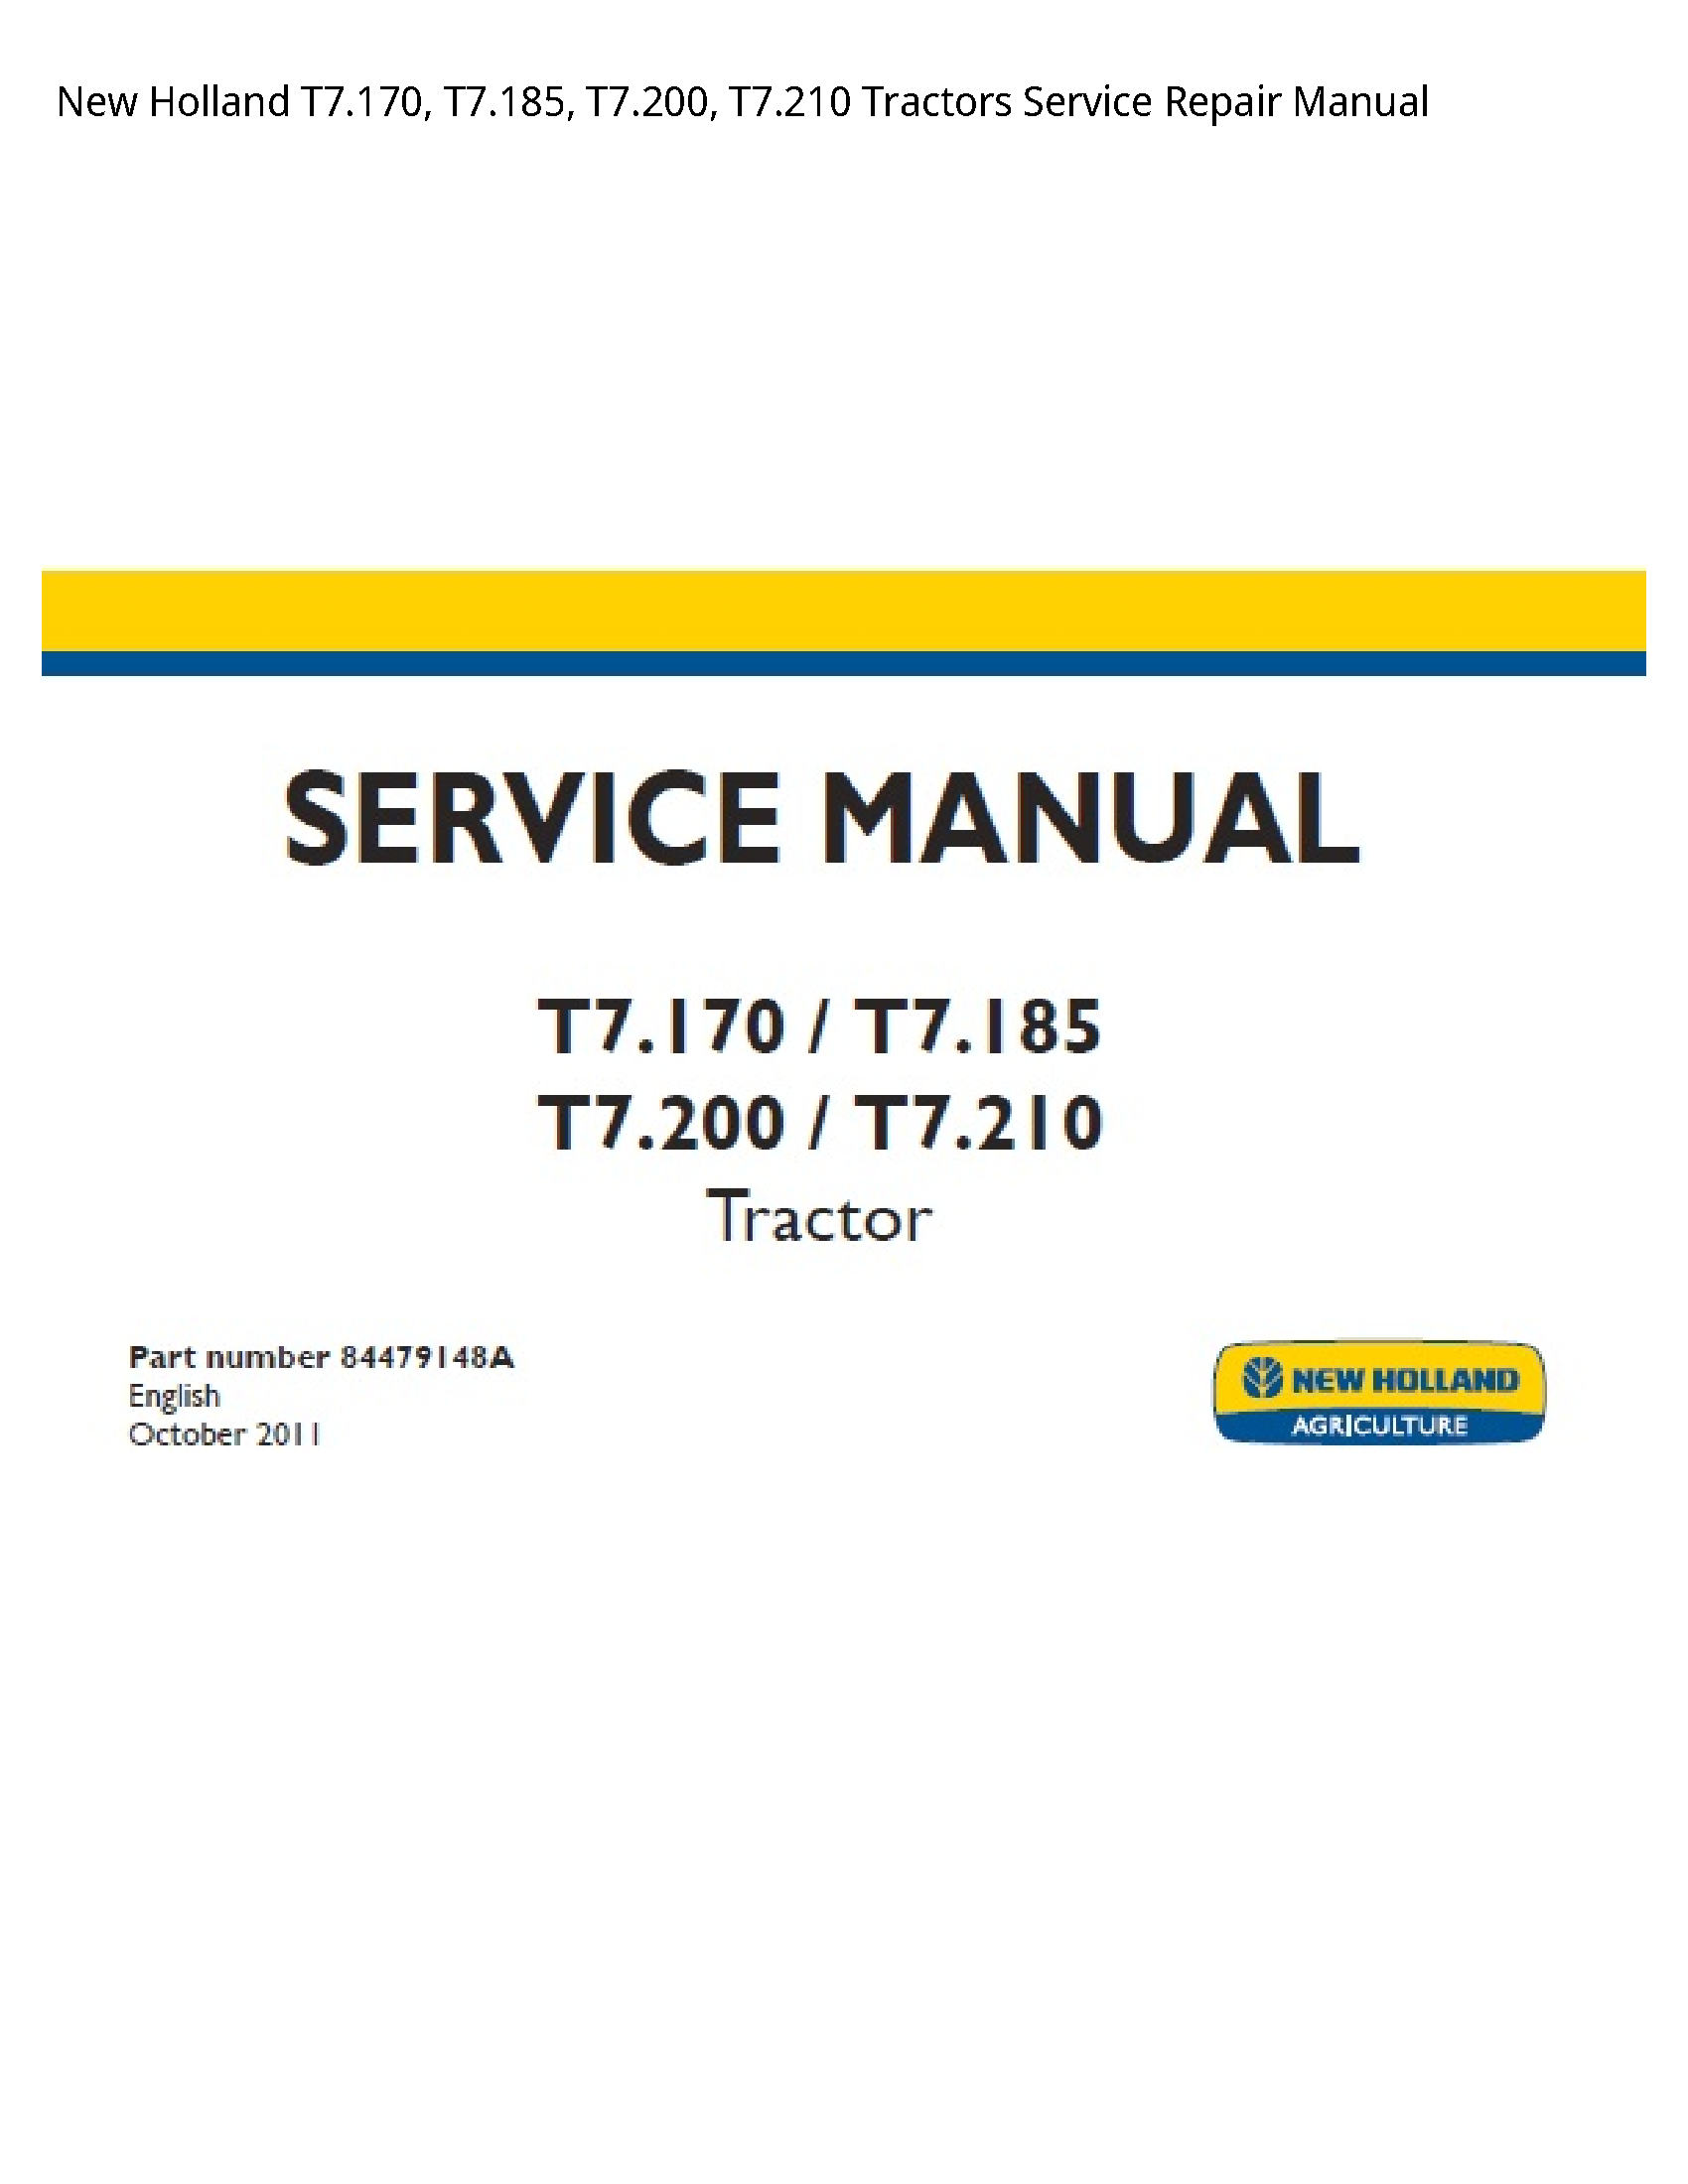 New Holland T7.170 Tractors manual